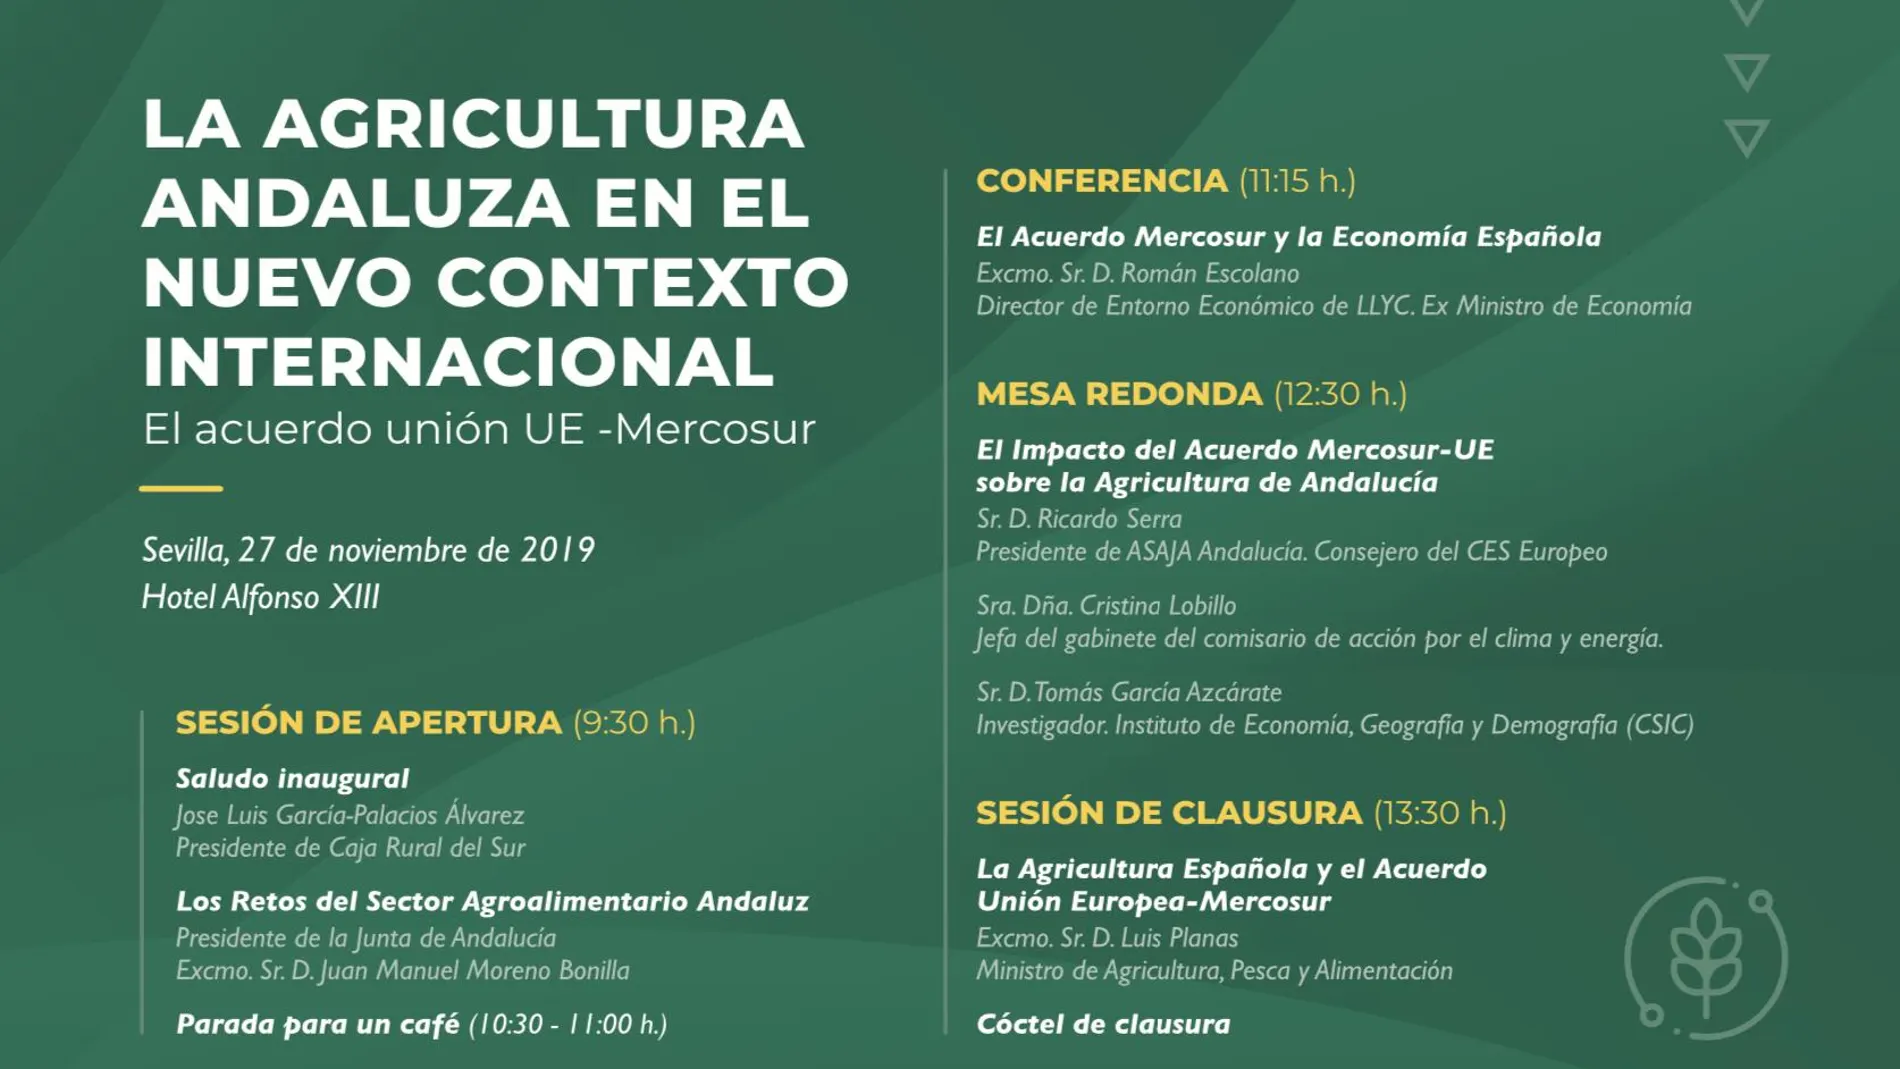 Contenido de la jornada, organizada por la Fundación Caja Rural del Sur, que tratará el futuro de la agricultura andaluza